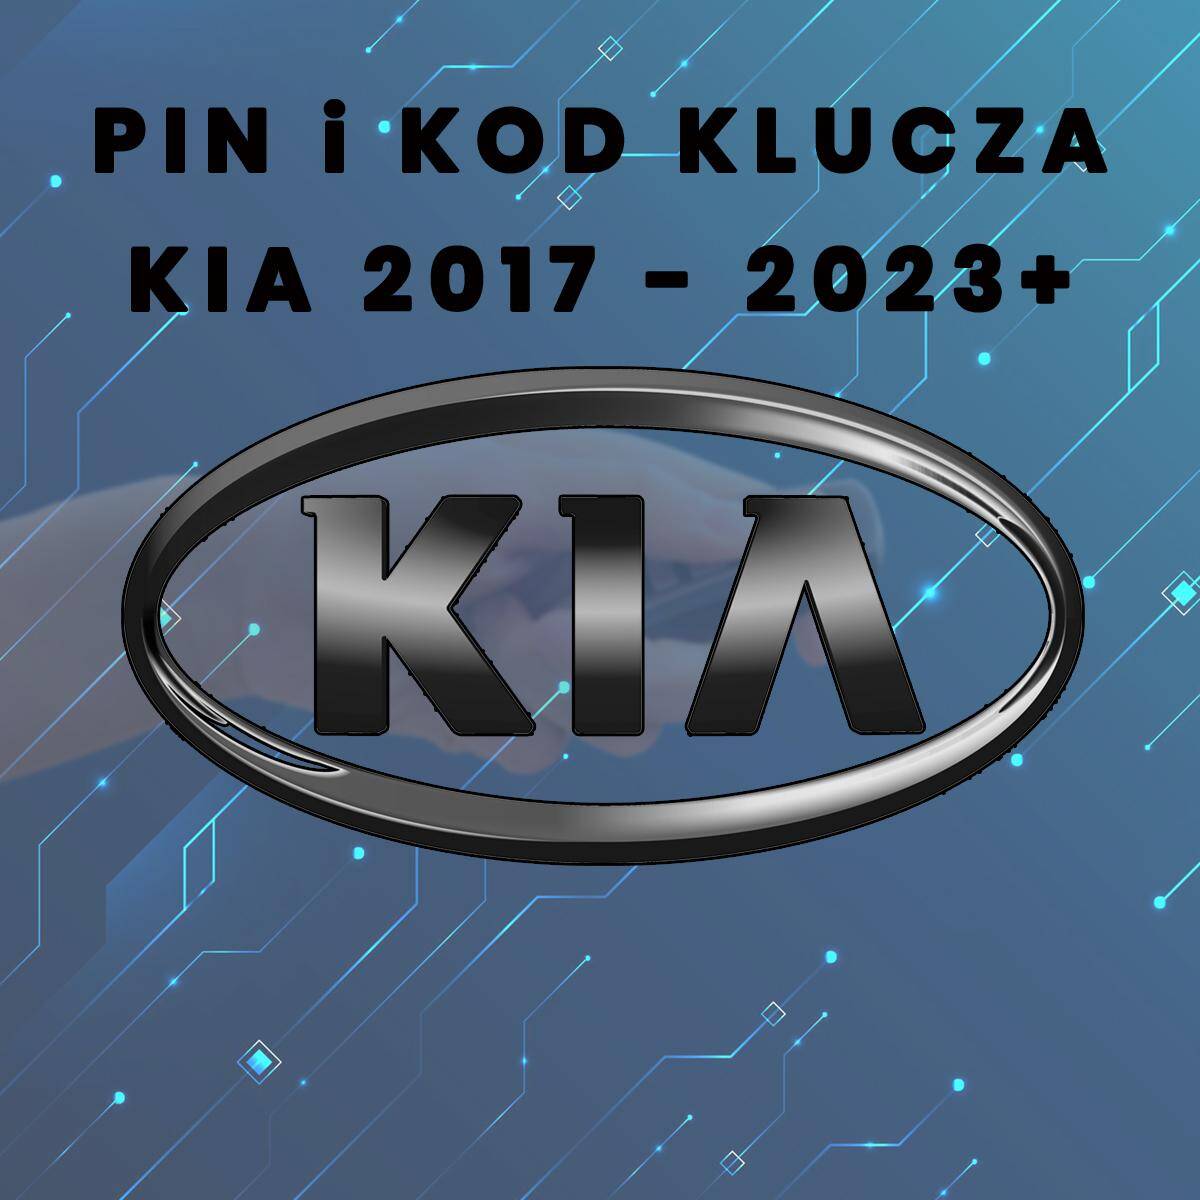 Pin i kod klucza Kia rocznik 2017 - 2023+